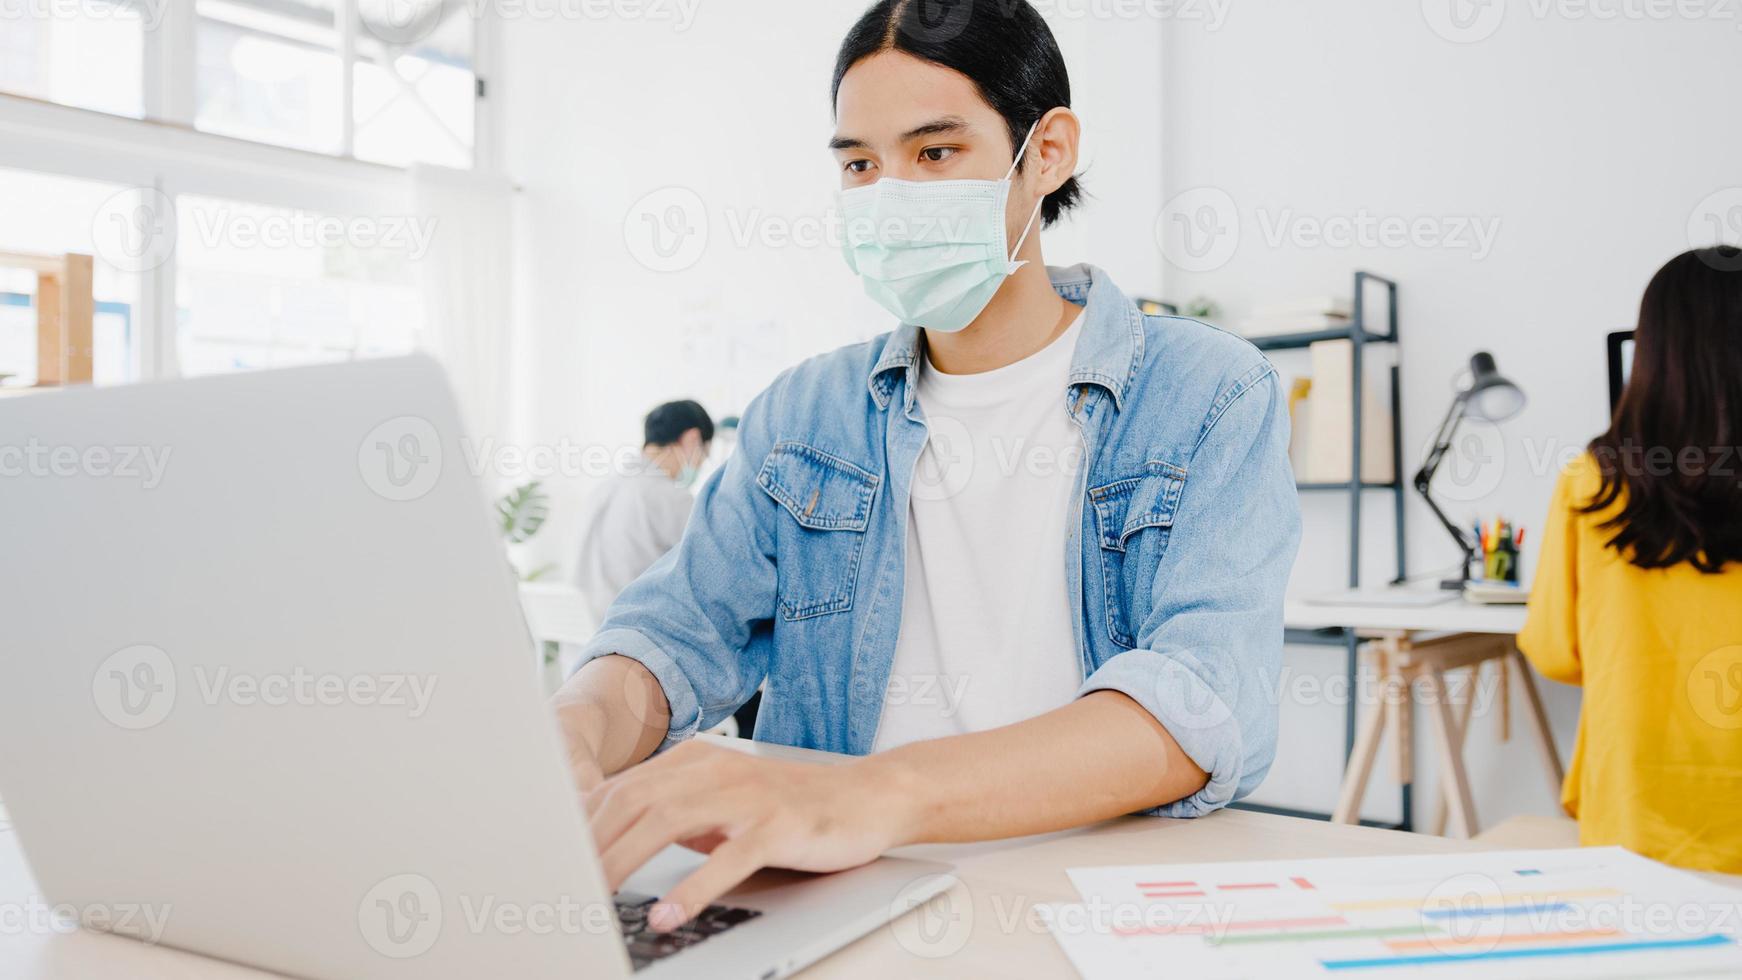 ásia empresário empresário usando máscara médica para distanciamento social em nova situação normal para prevenção de vírus enquanto usa o laptop no trabalho no escritório. estilo de vida após o vírus corona. foto